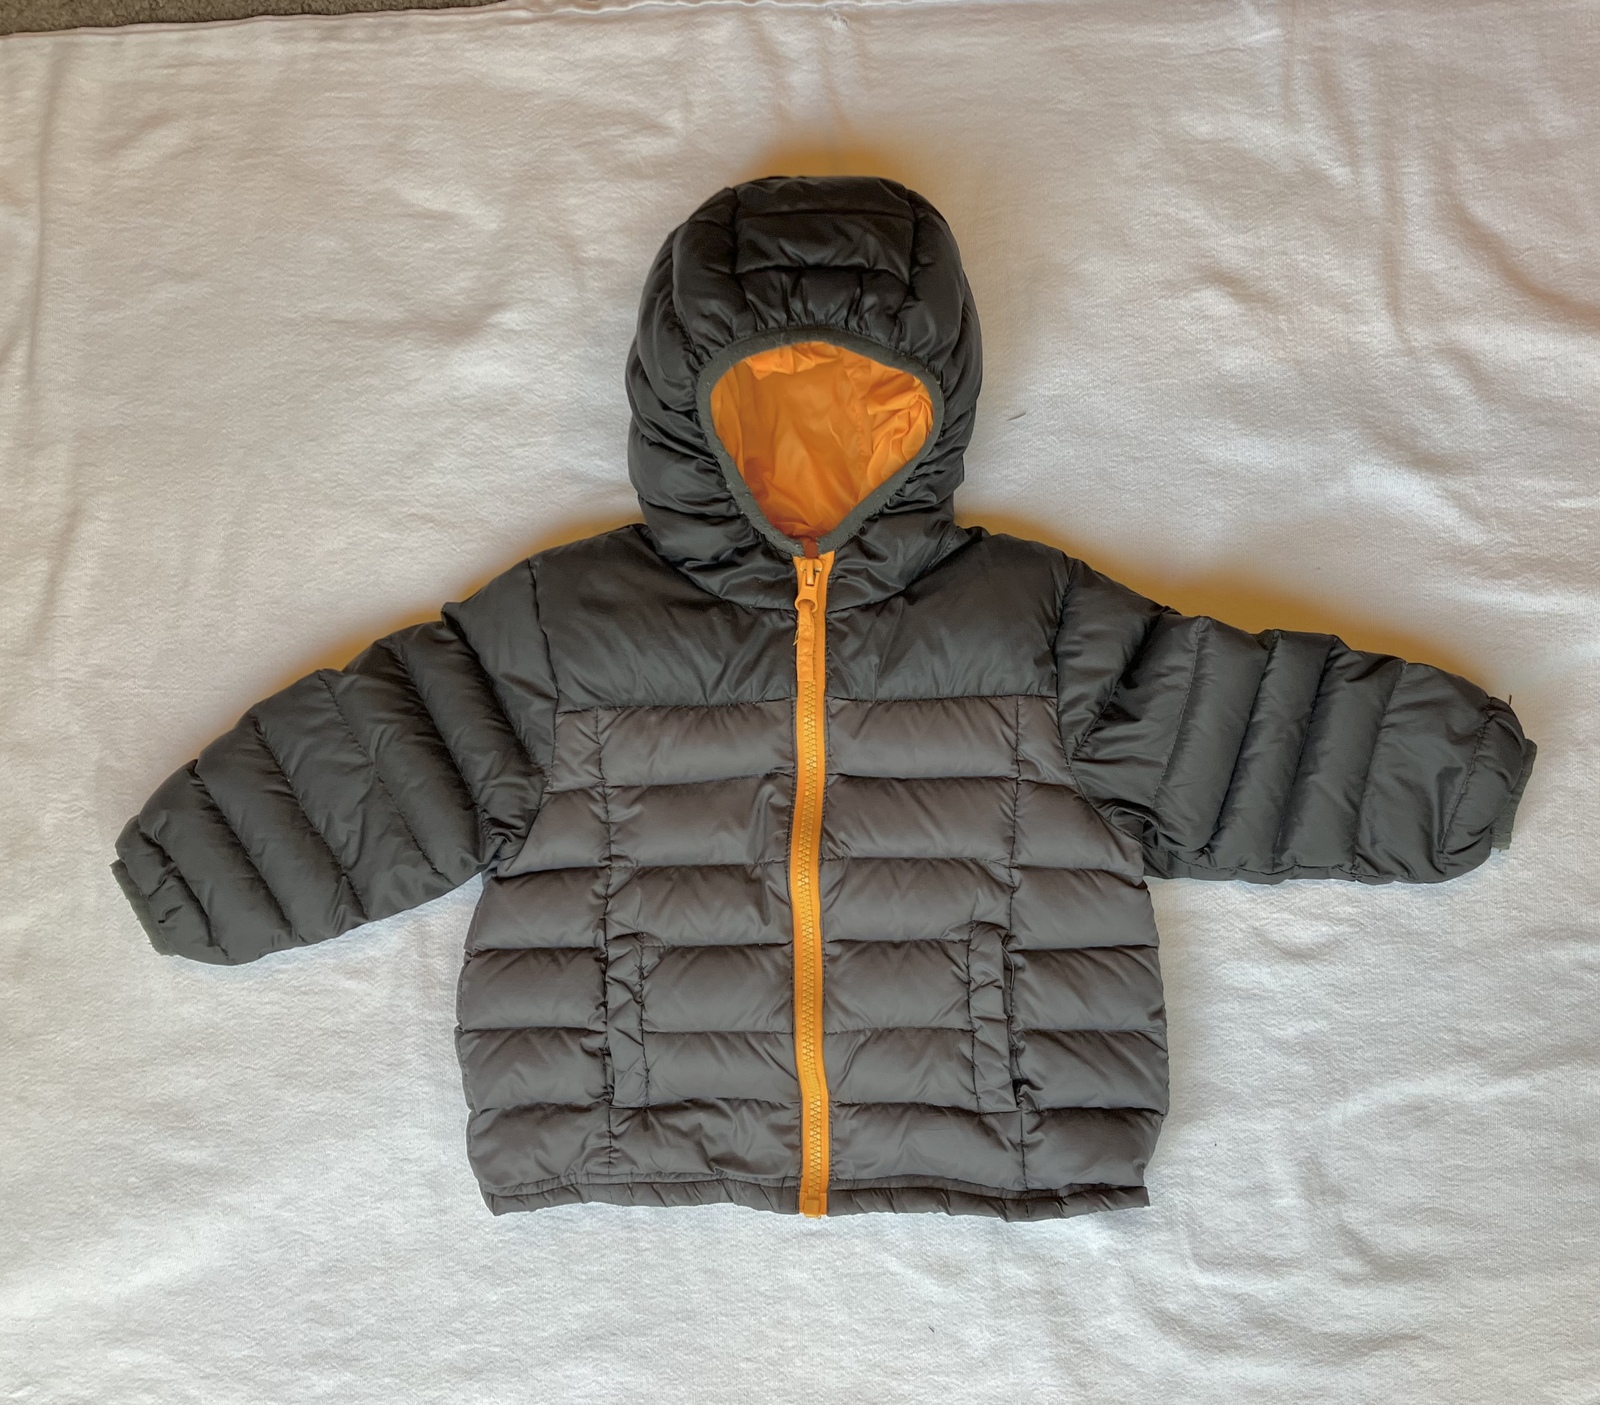 BN Tech Sport Down Puffer Jacket with Hood - Gray/Orange (24 months) (VGUC) - $17.00